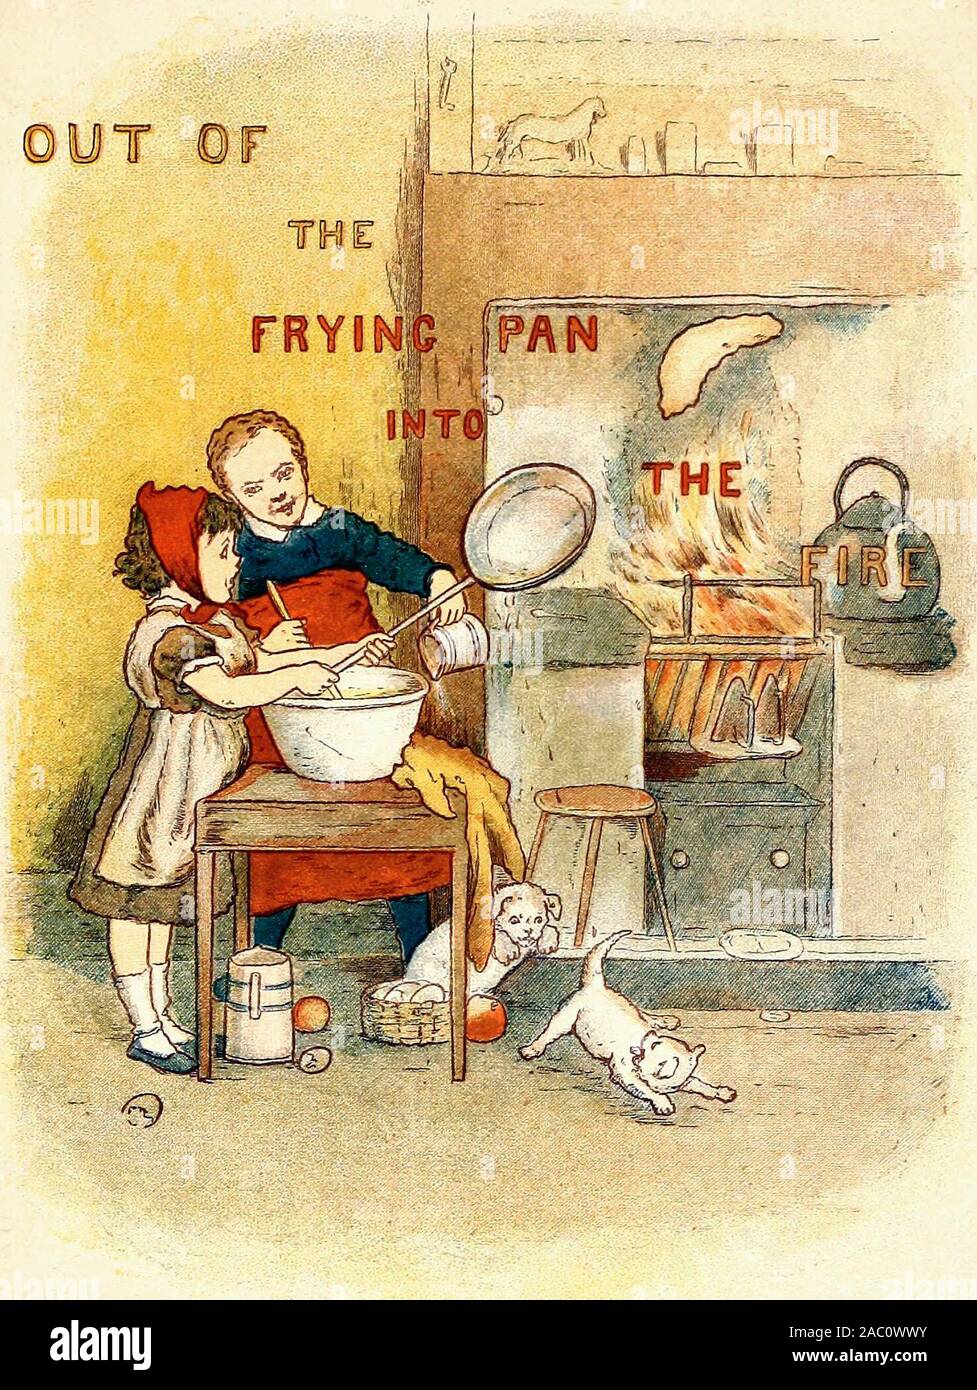 Fuera de la sartén al fuego - una ilustración vintage de un viejo proverbio Foto de stock